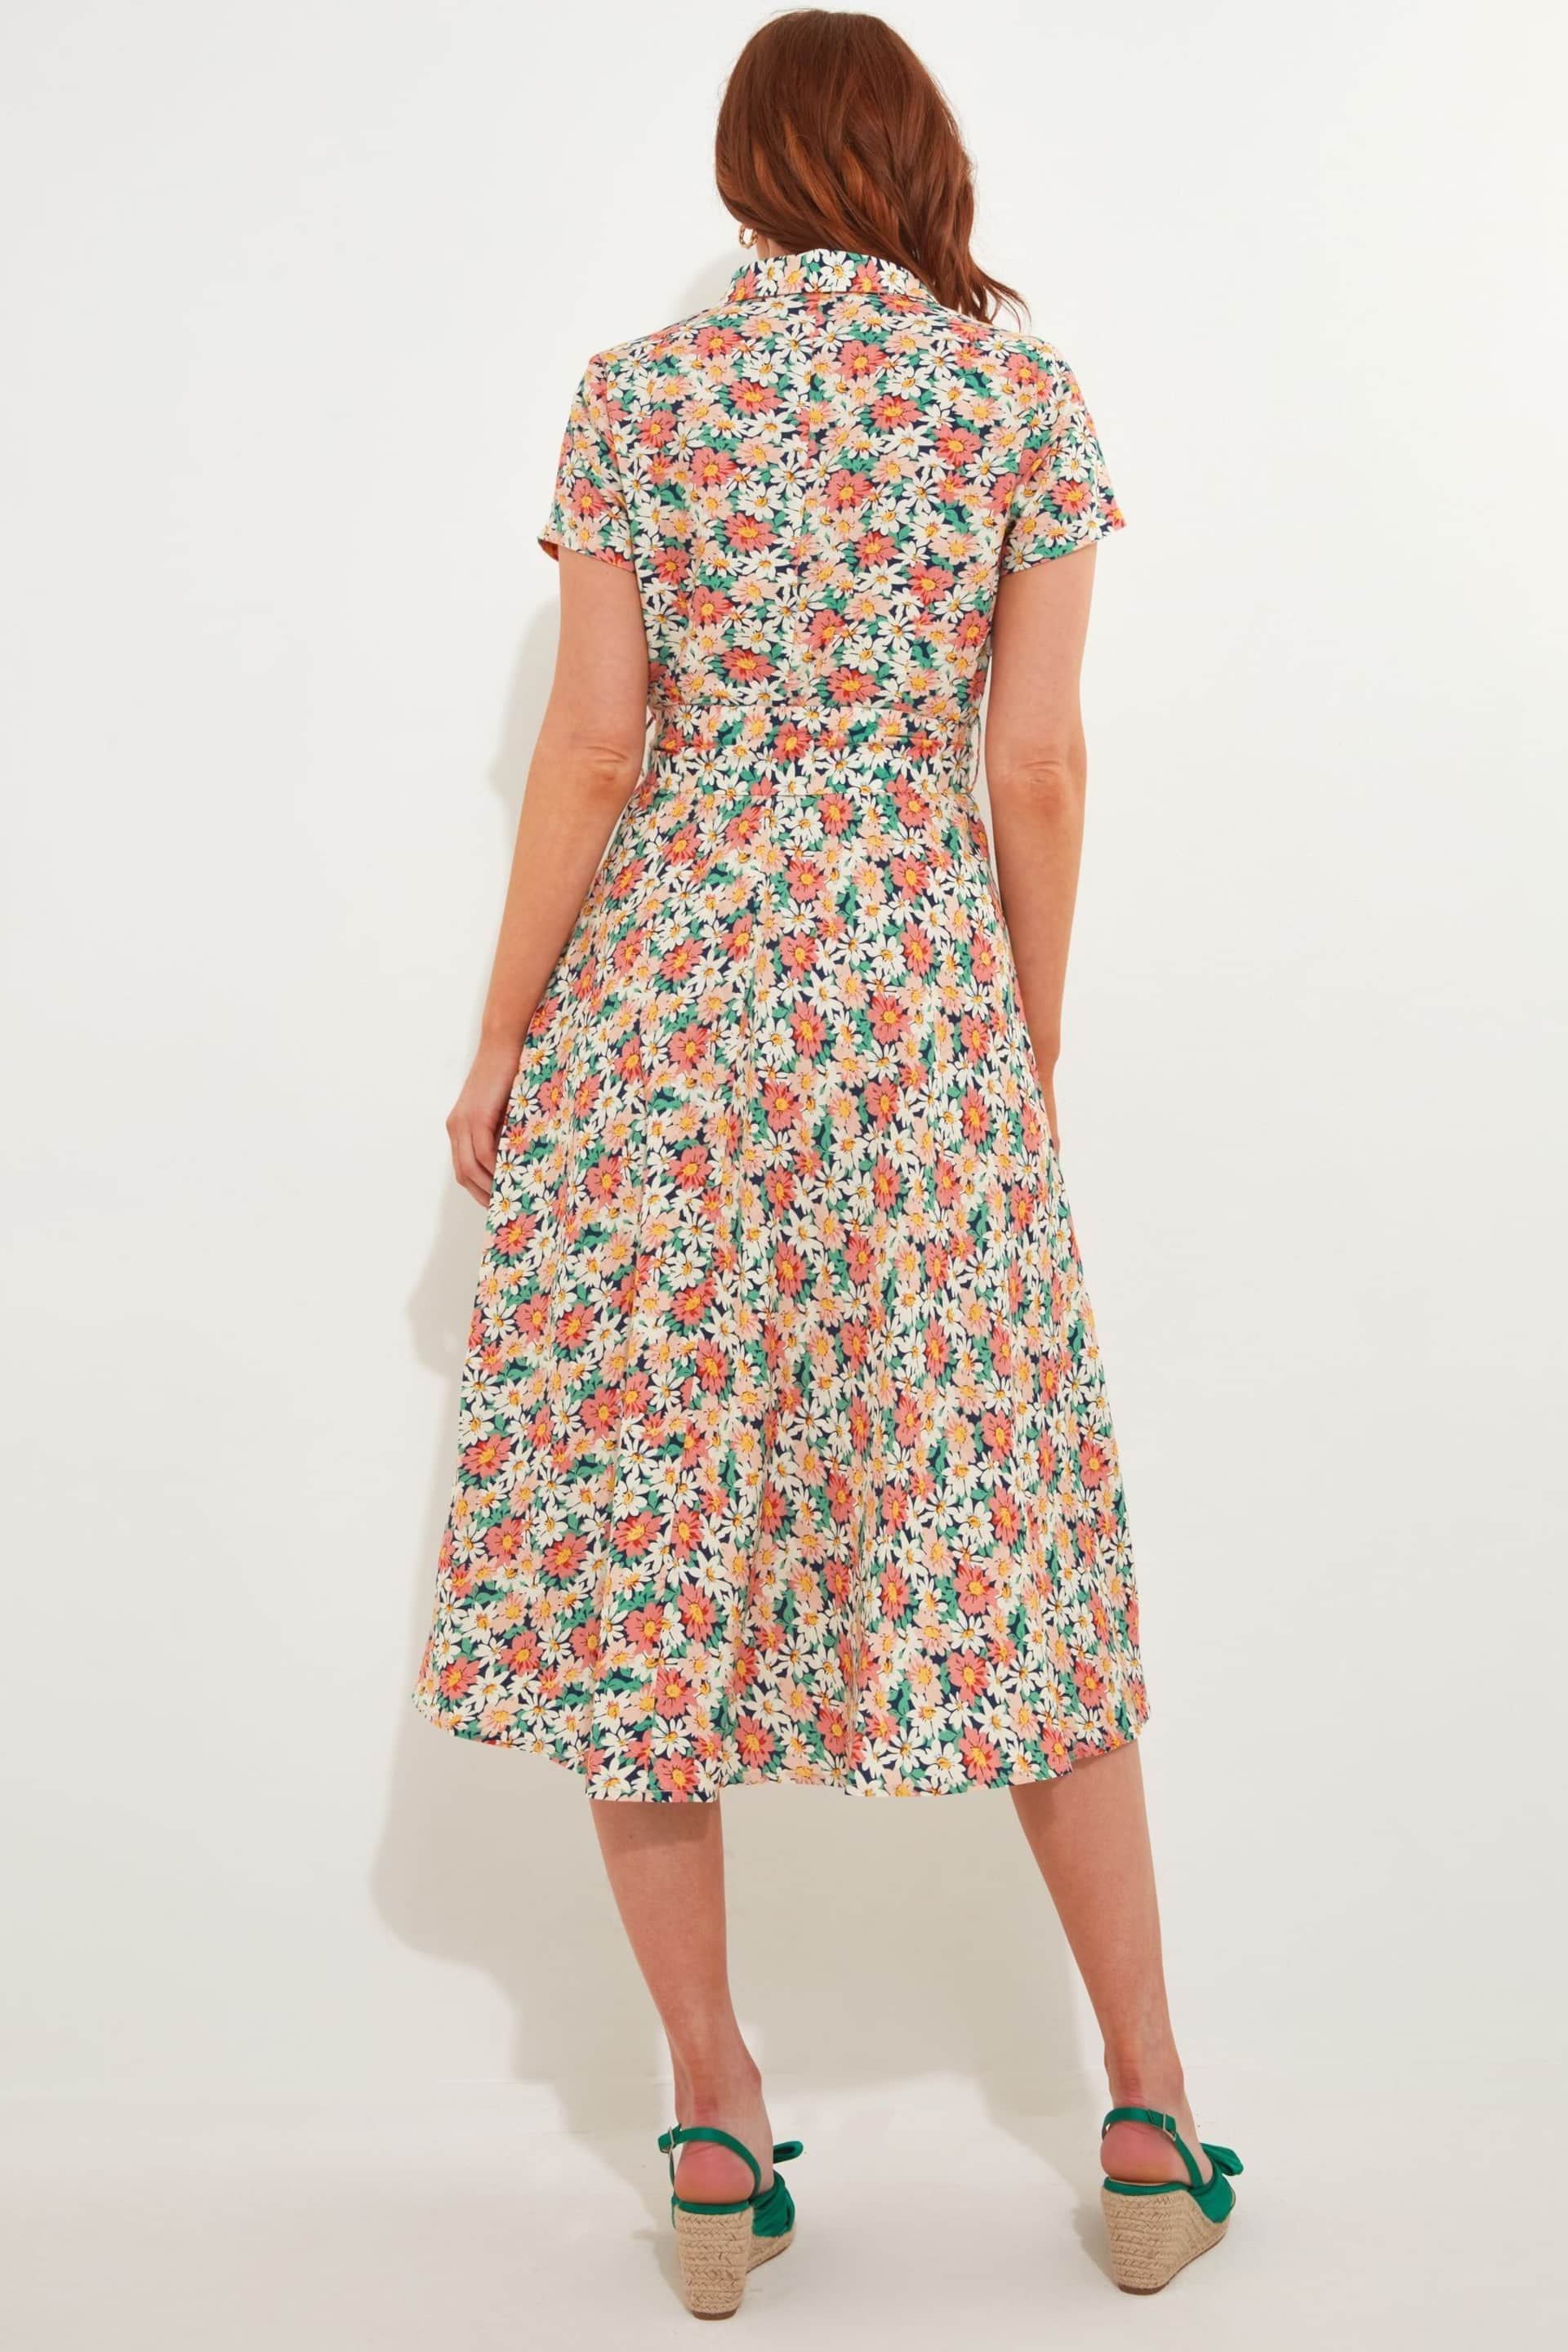 Joe Browns Cream Floral Print Short Sleeve Linen Blend Shirt Dress - Image 3 of 5